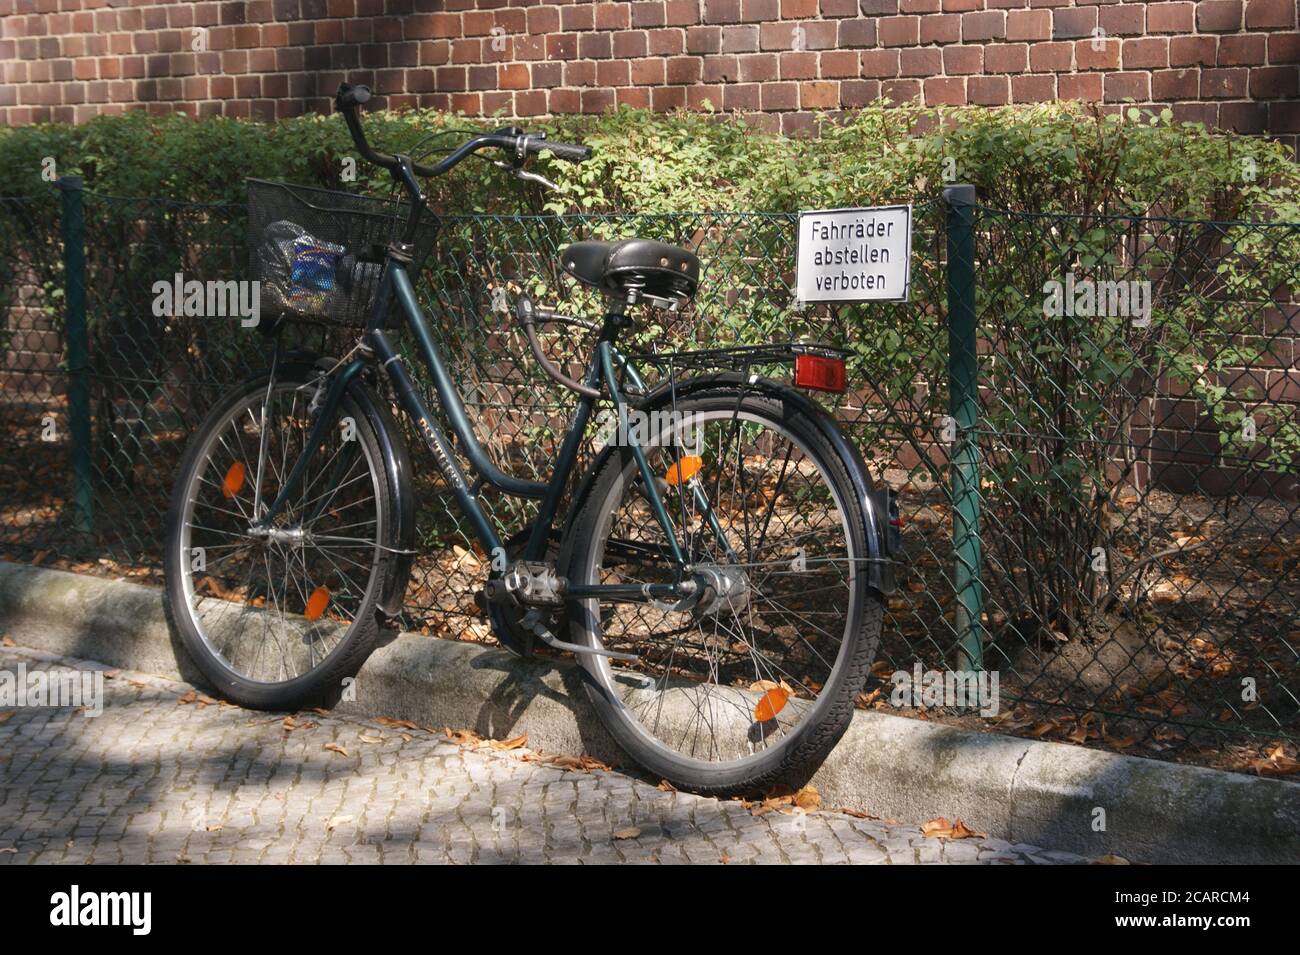 Fahrräder abstellen verboten Stock Photo